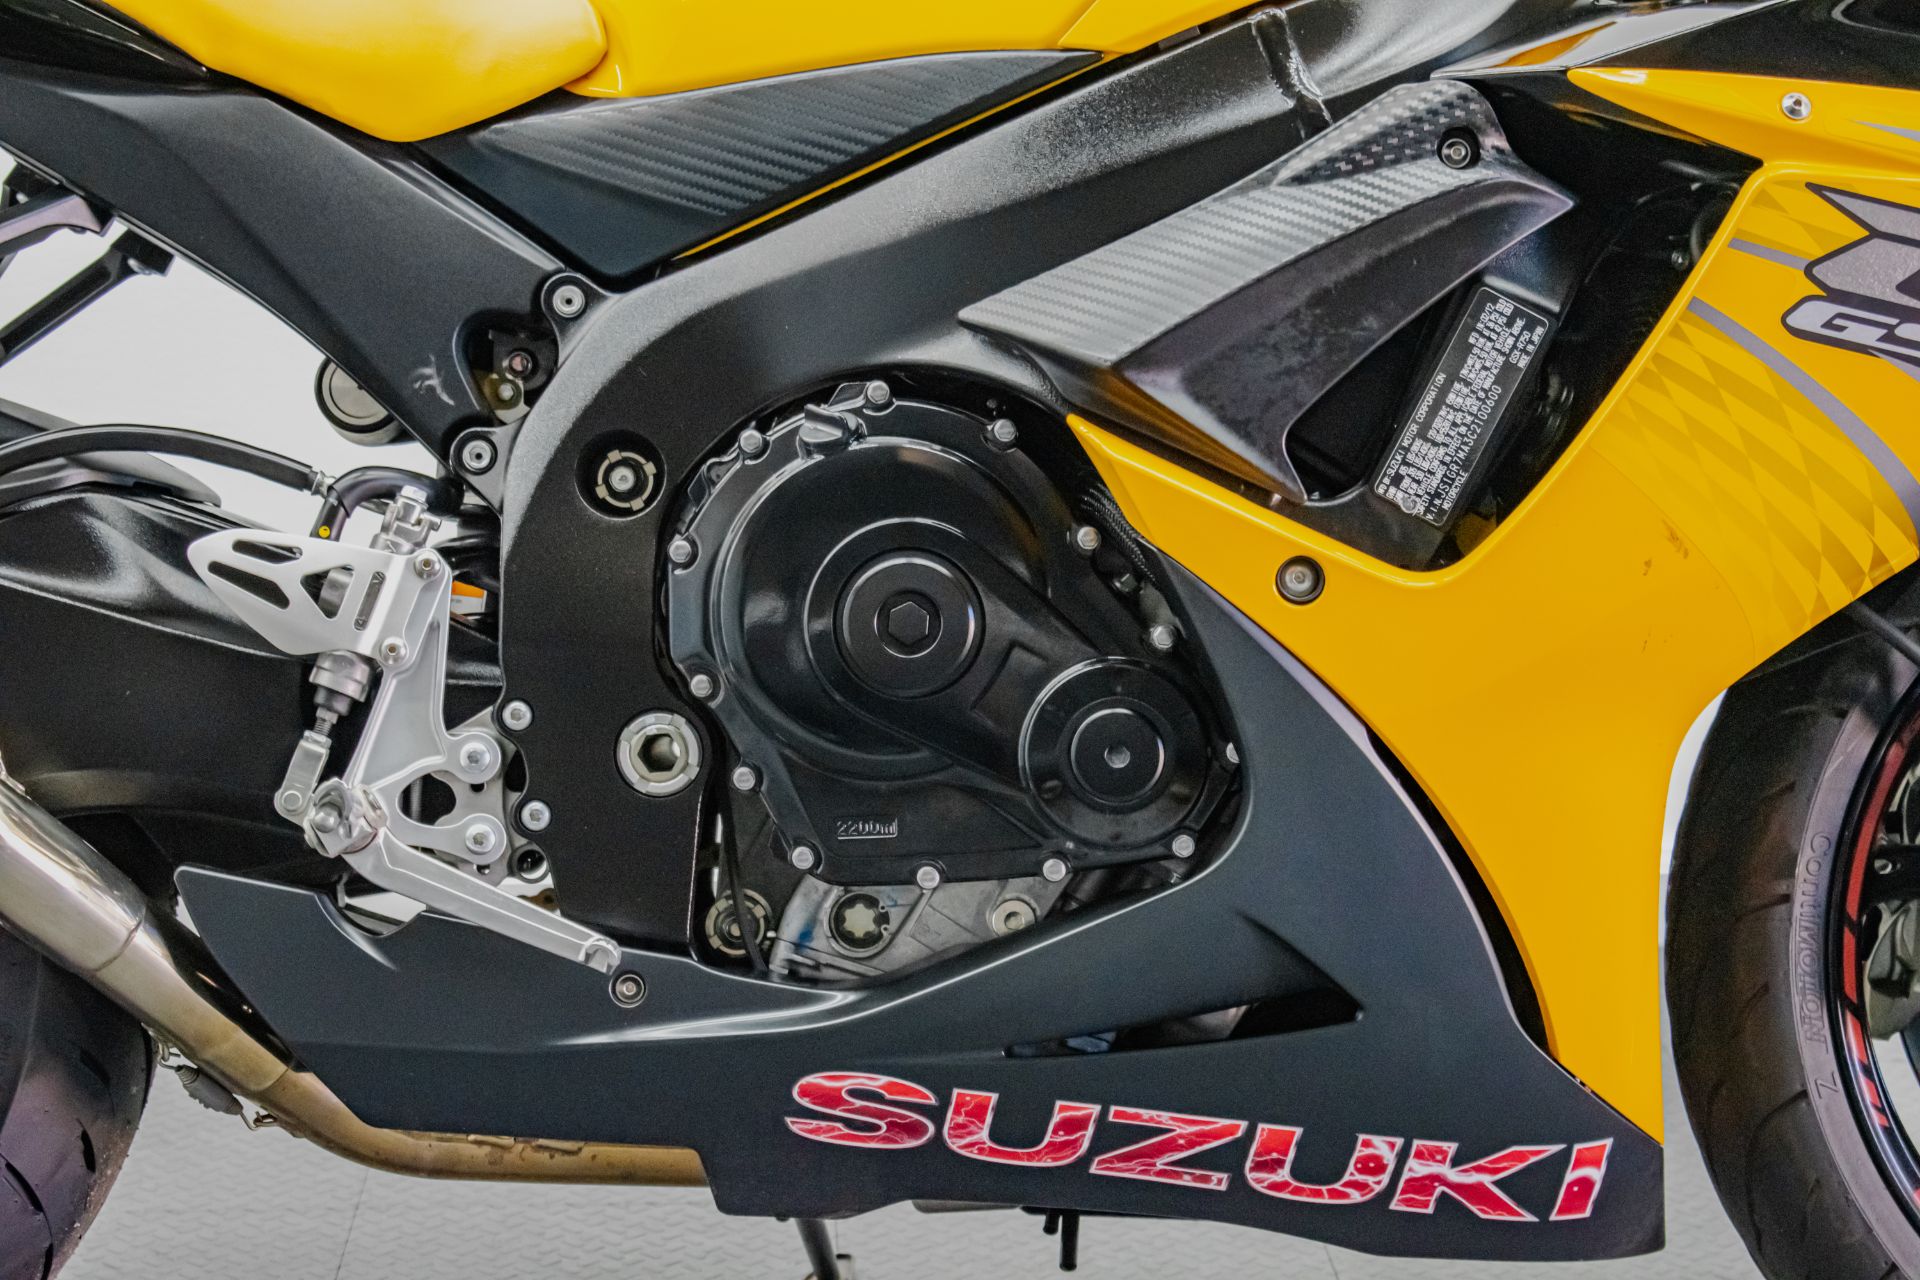 2012 Suzuki GSX-R750™ in Jacksonville, Florida - Photo 14